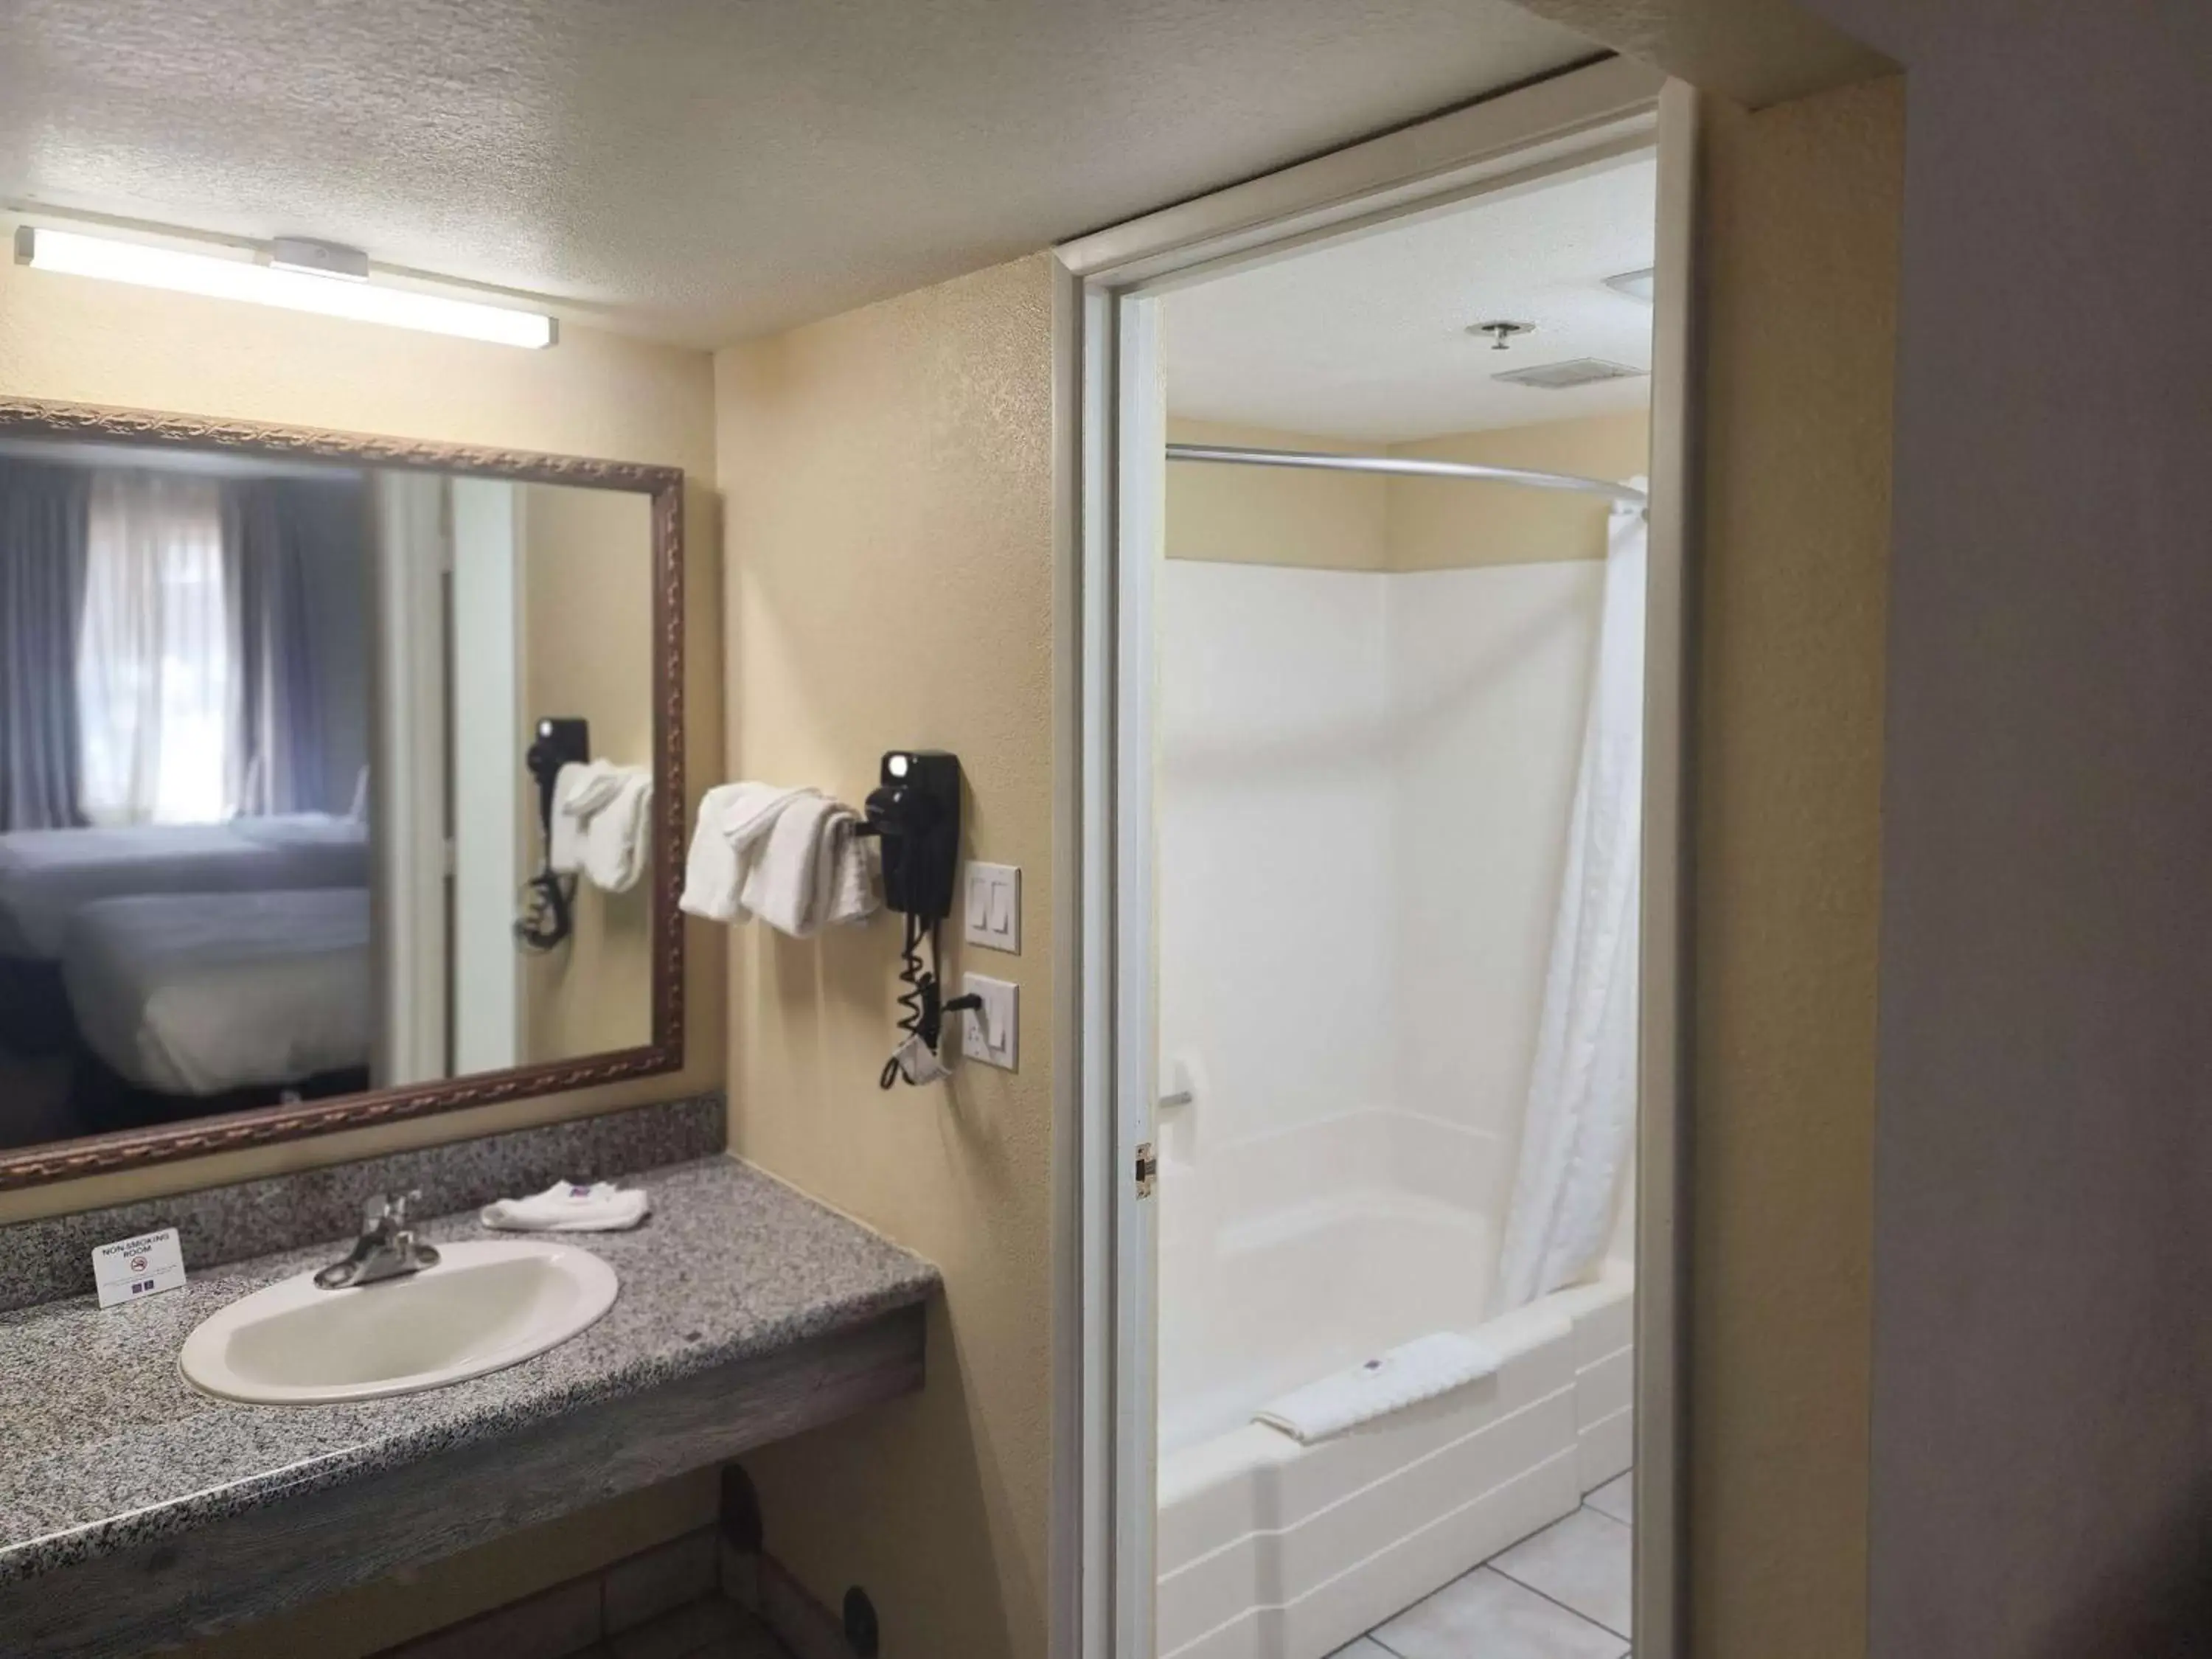 Bedroom, Bathroom in Studio 6 Suites - Willcox, AZ